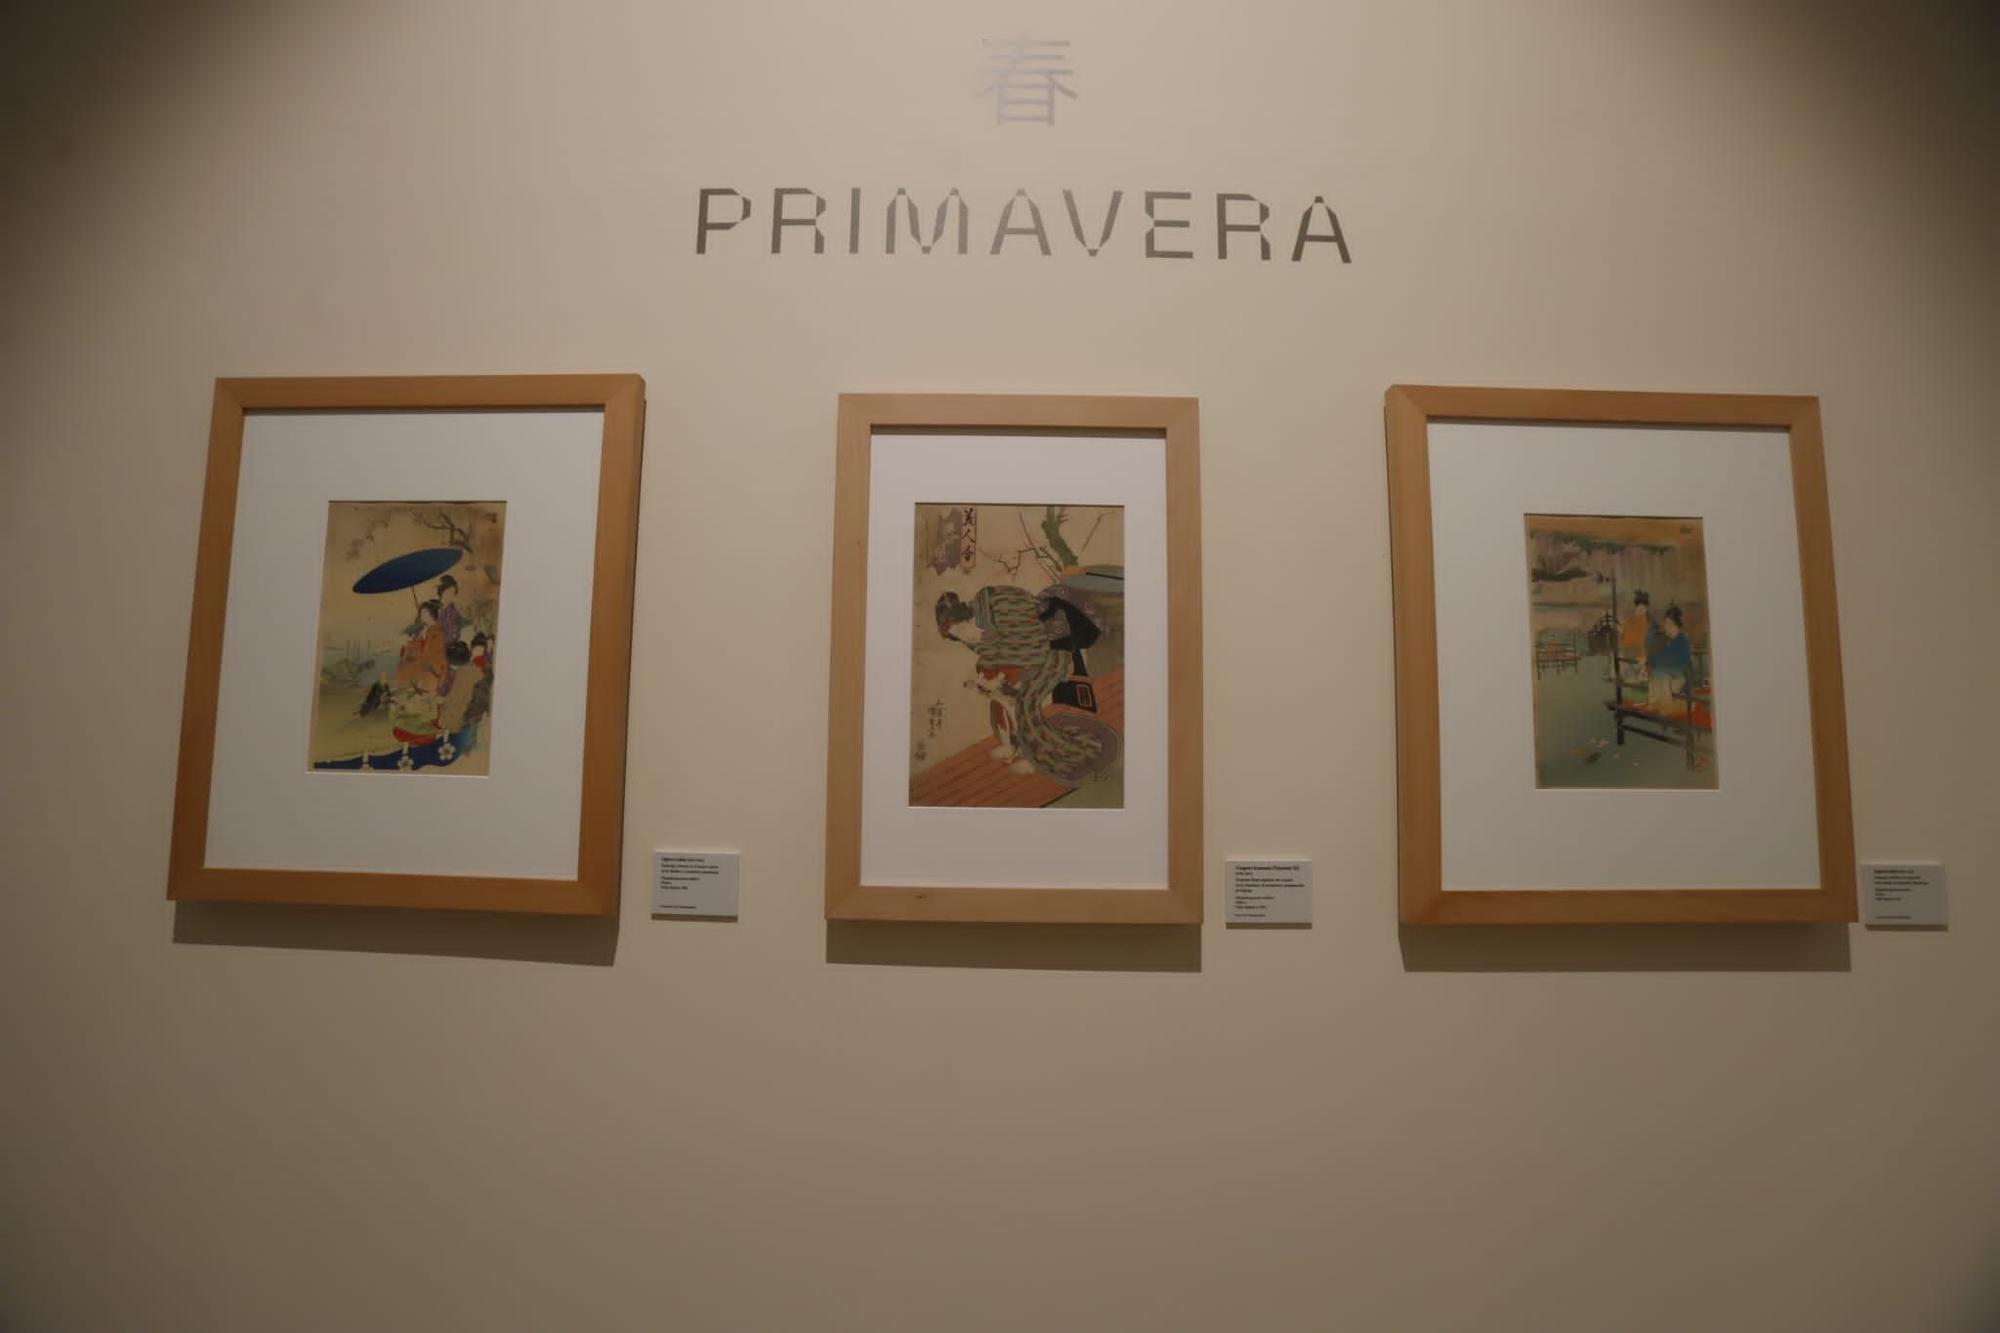 En imágenes | Exposición ‘Kimono. Piel de seda’ en el Museo de Zaragoza